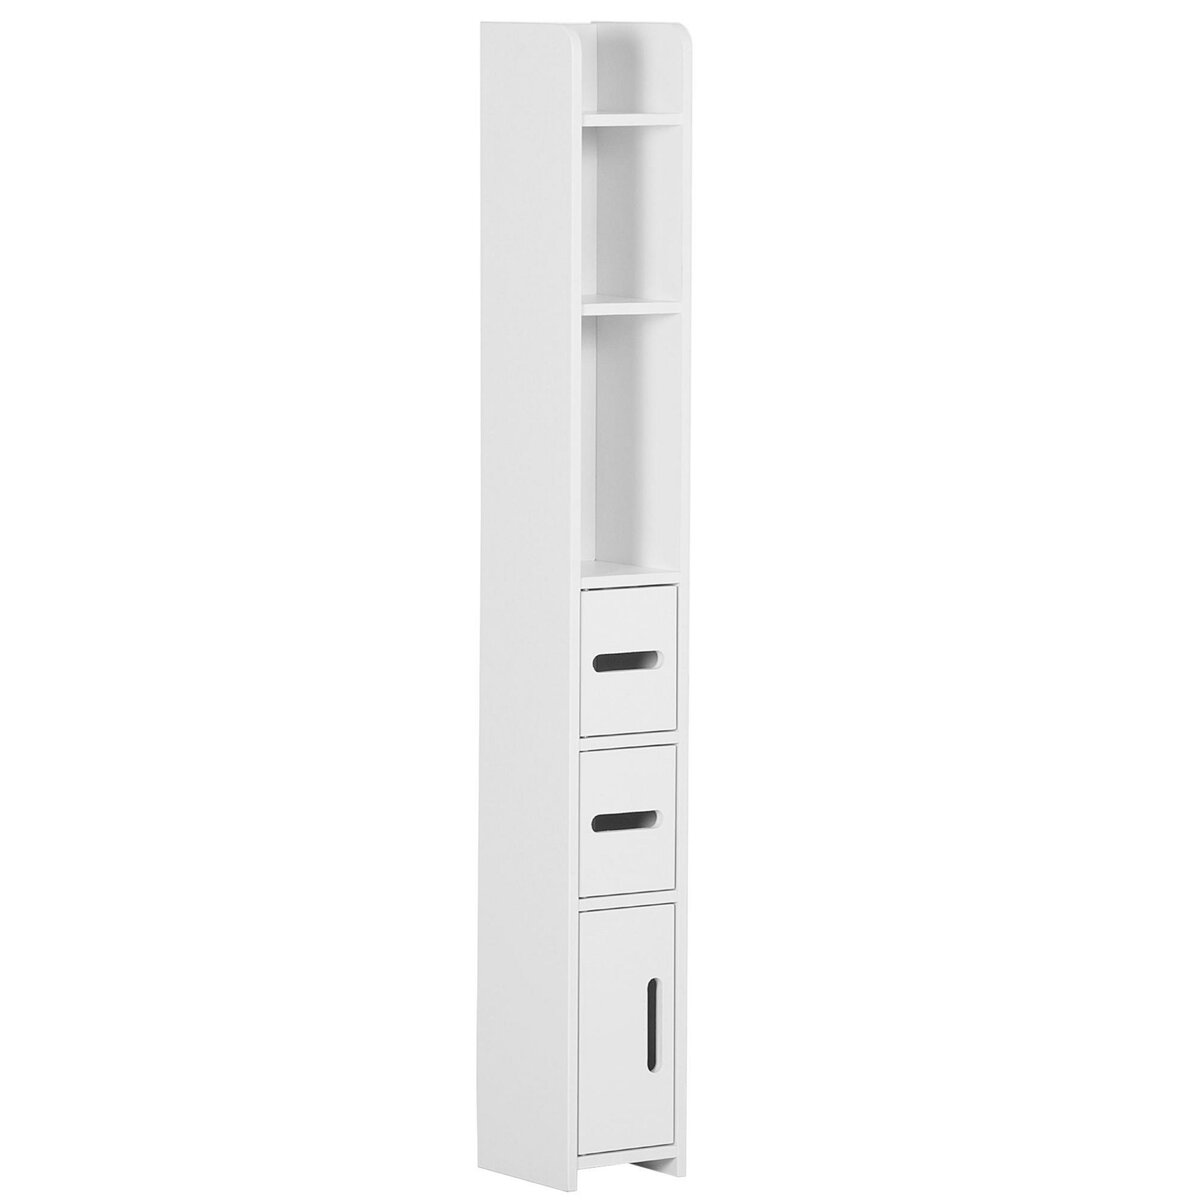 Kleankin - Meuble colonne rangement salle de bain dim. 30L x 30l x 144H cm  2 tiroirs 3 étagères MDF blanc